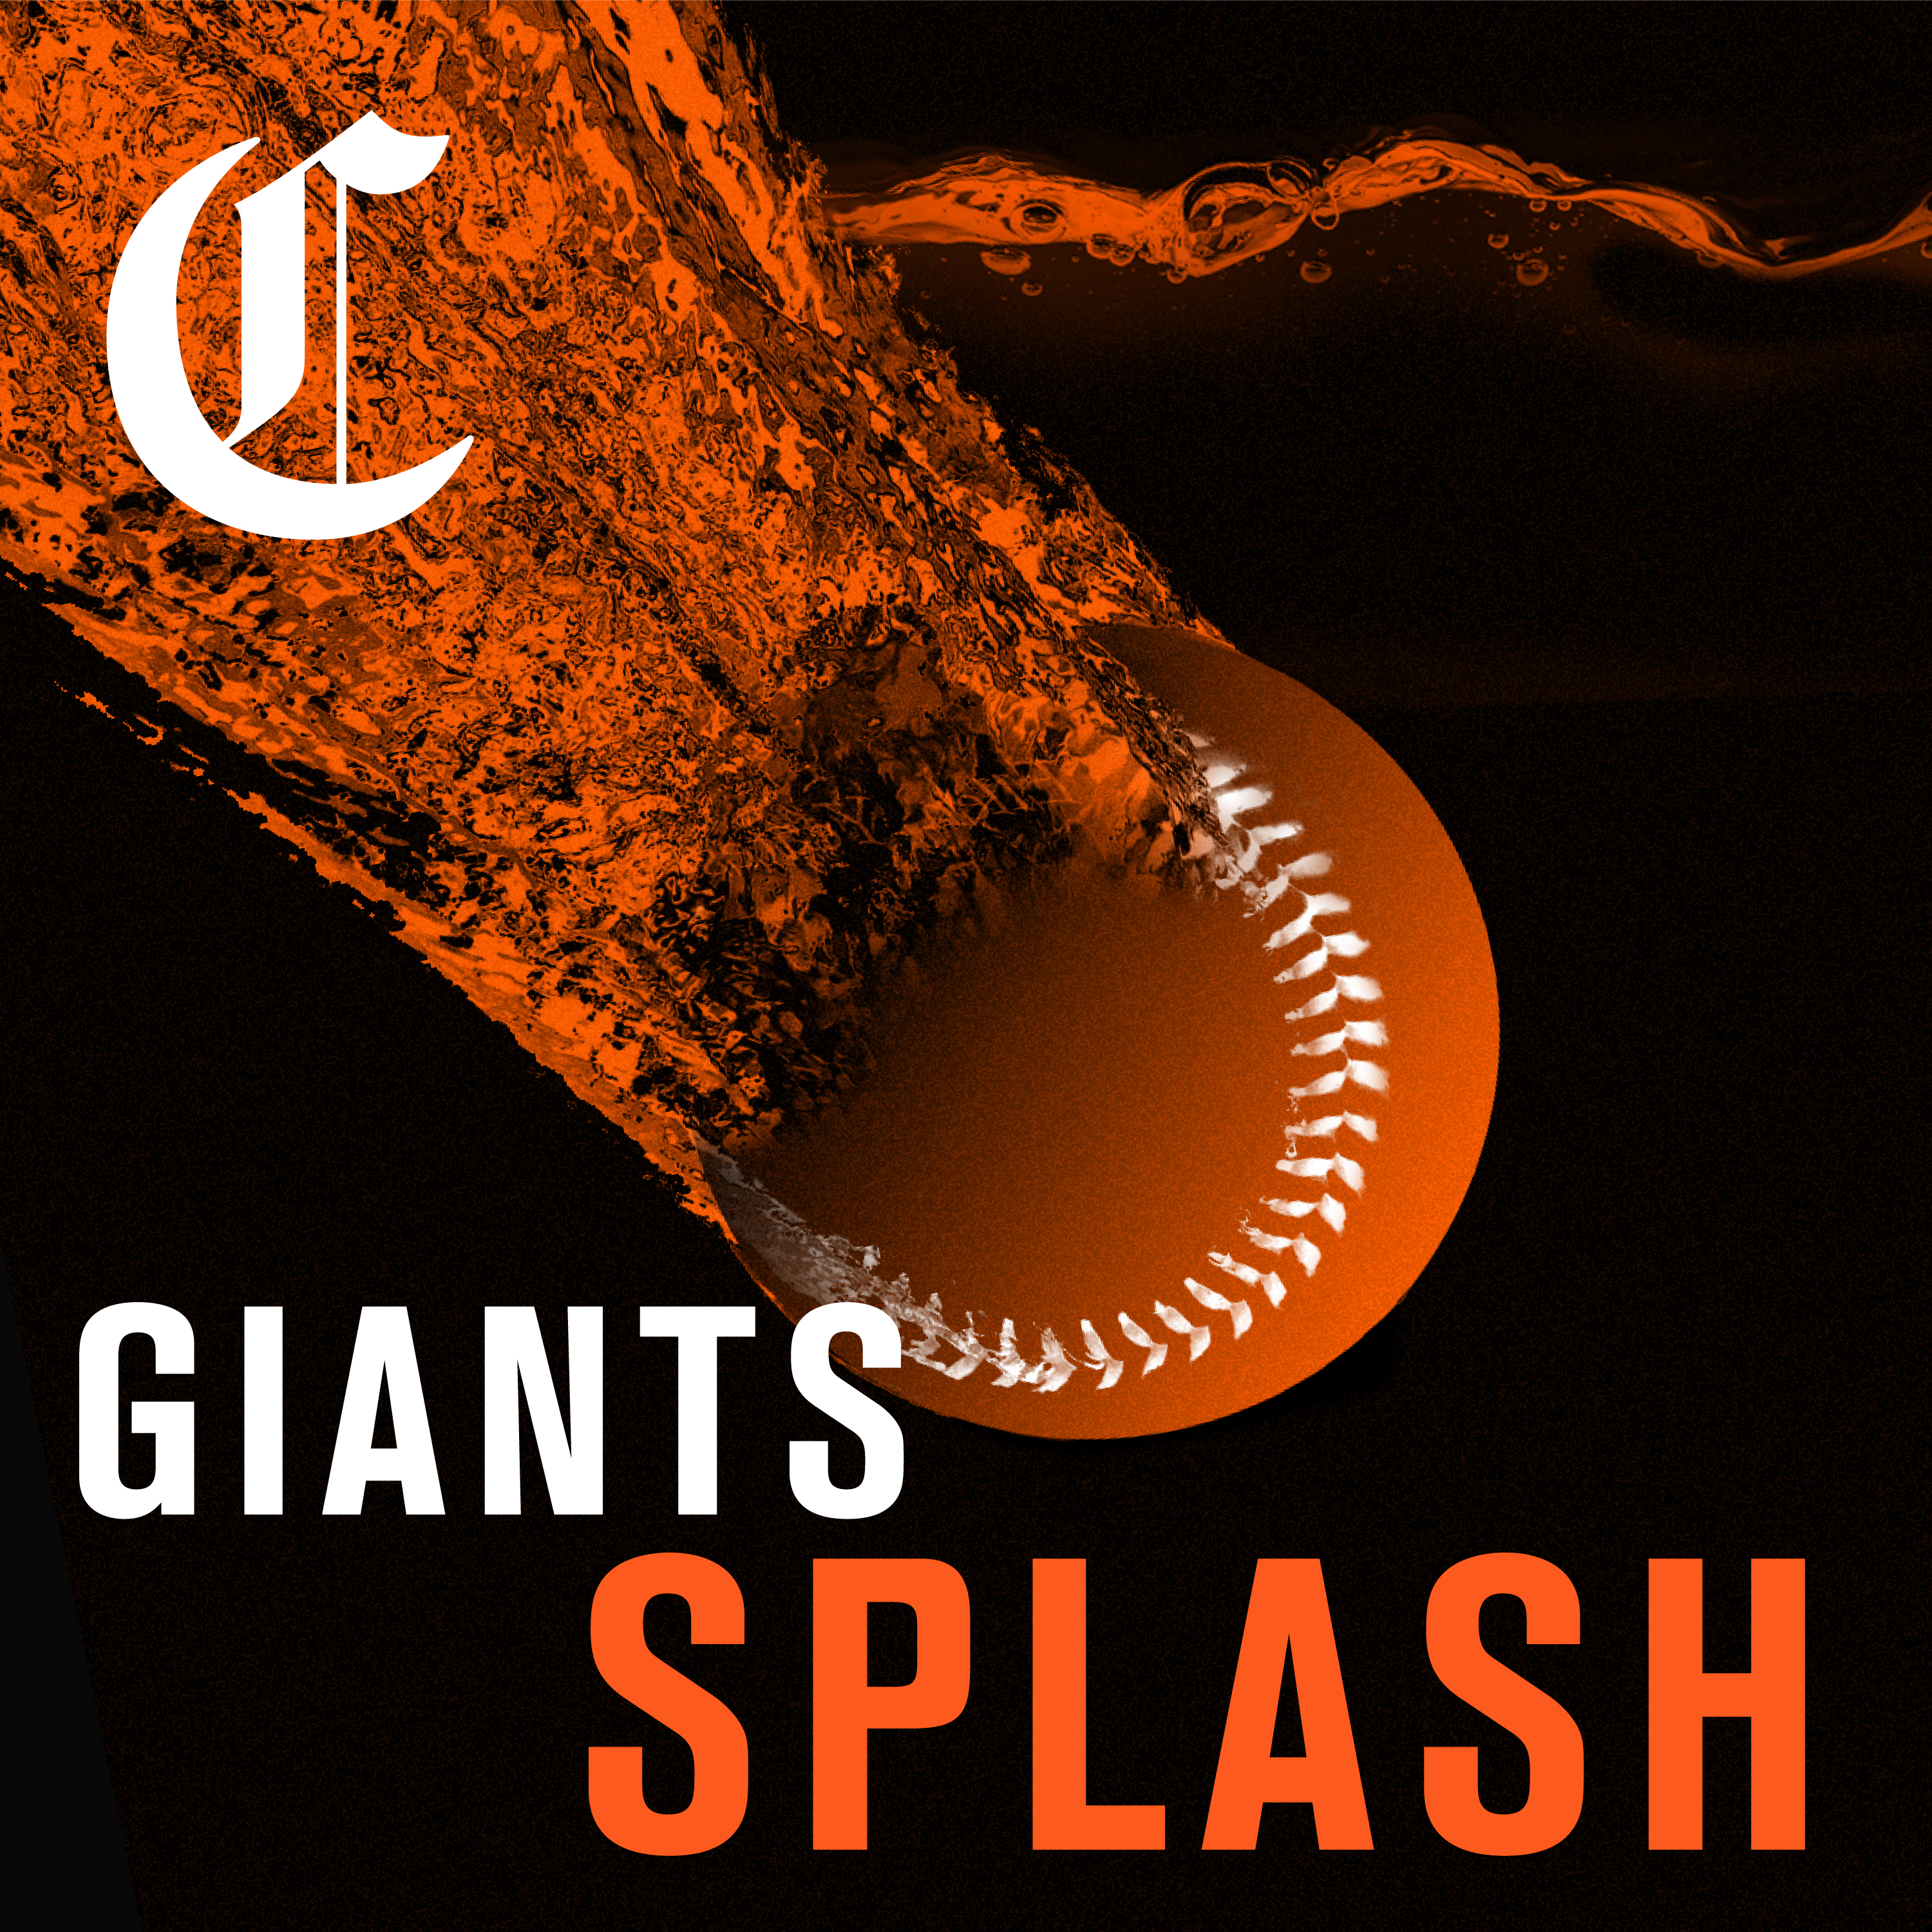 Former Giants All-Star Joe Panik retires - McCovey Chronicles